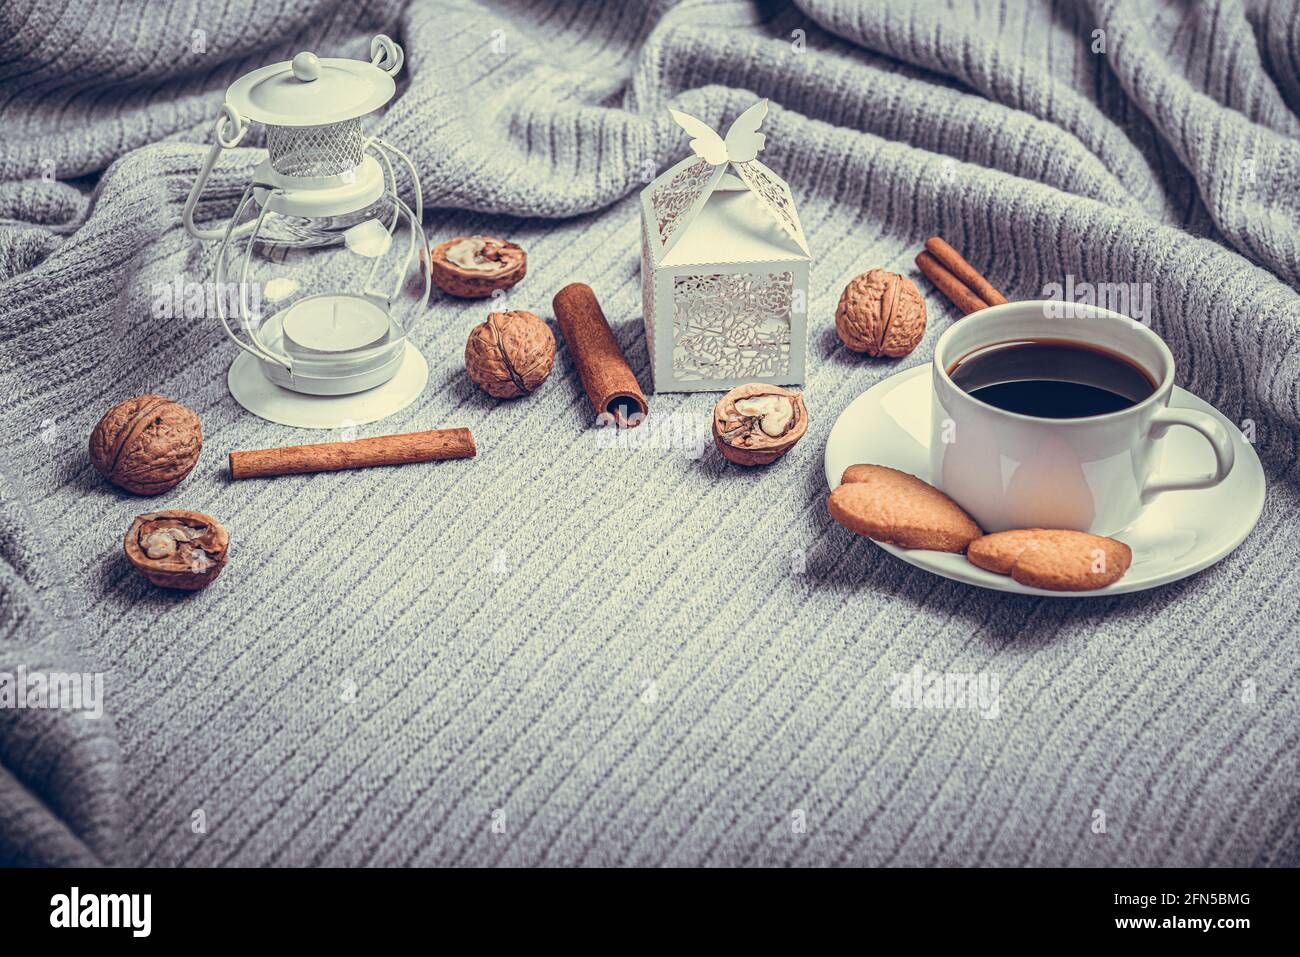 Una bella plaid, una tazza con caffè e biscotti su un tavolo con candele e una busta bianca. Foto Stock